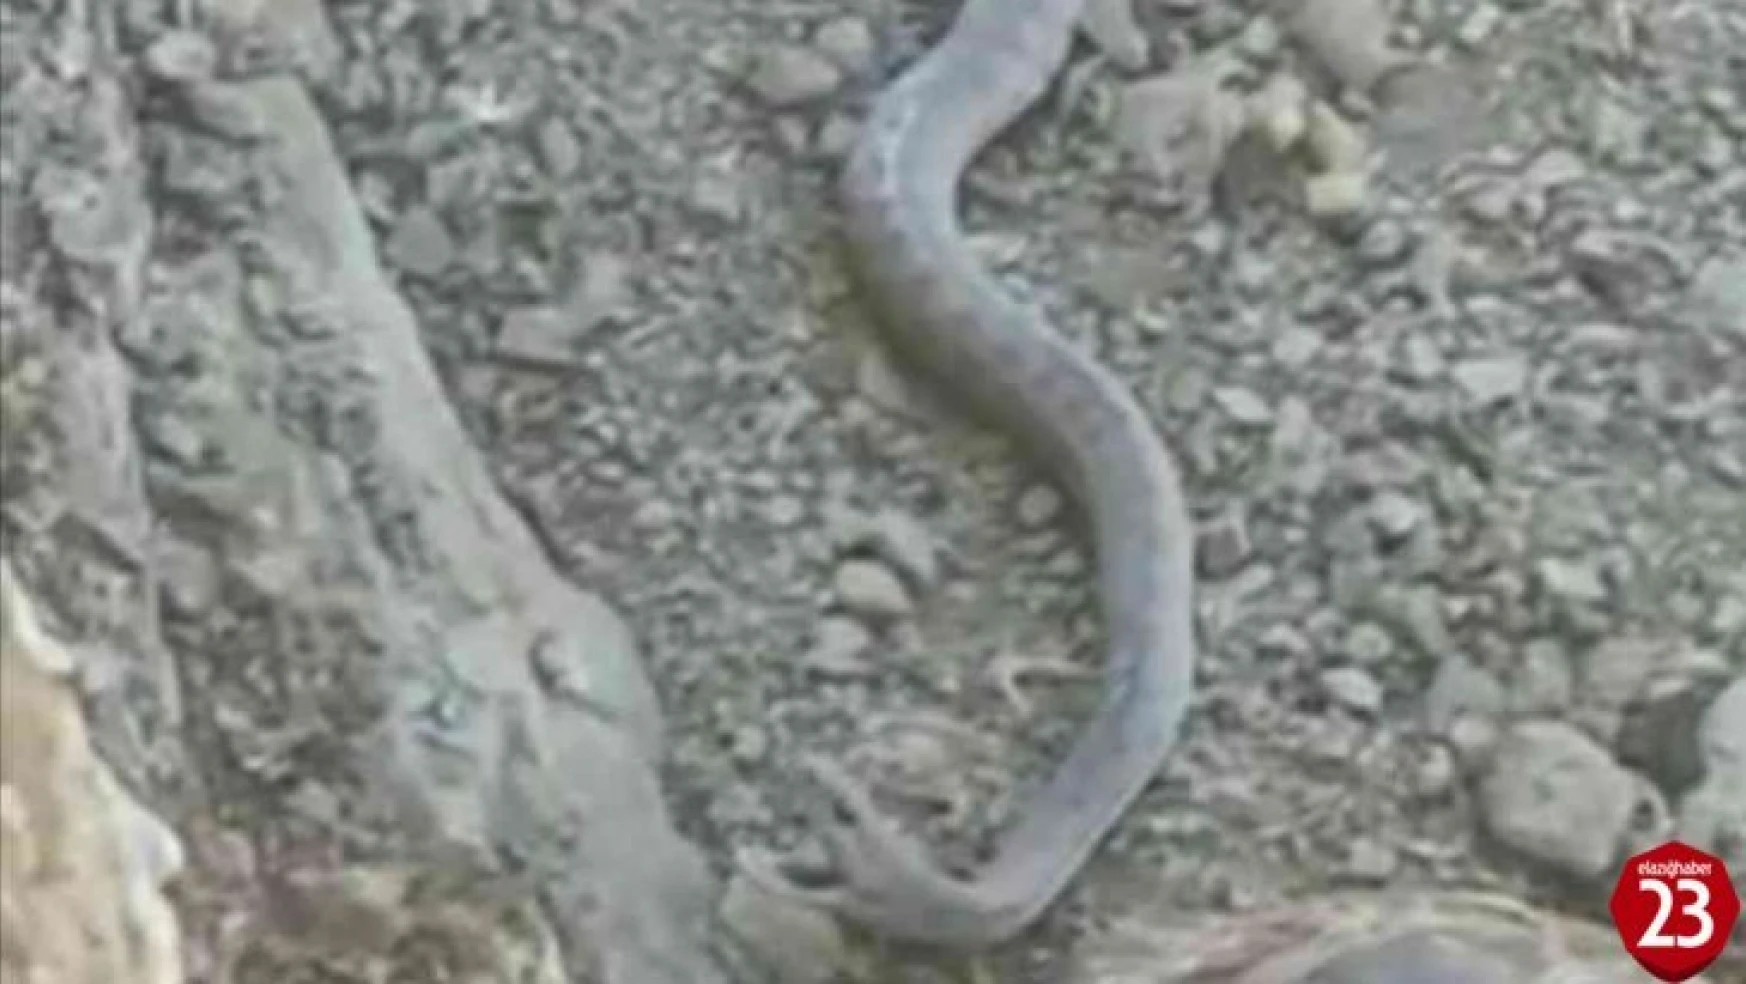 Elazığ'da 2 metrelik yılan ve kaplumbağa birlikte görüntülendi